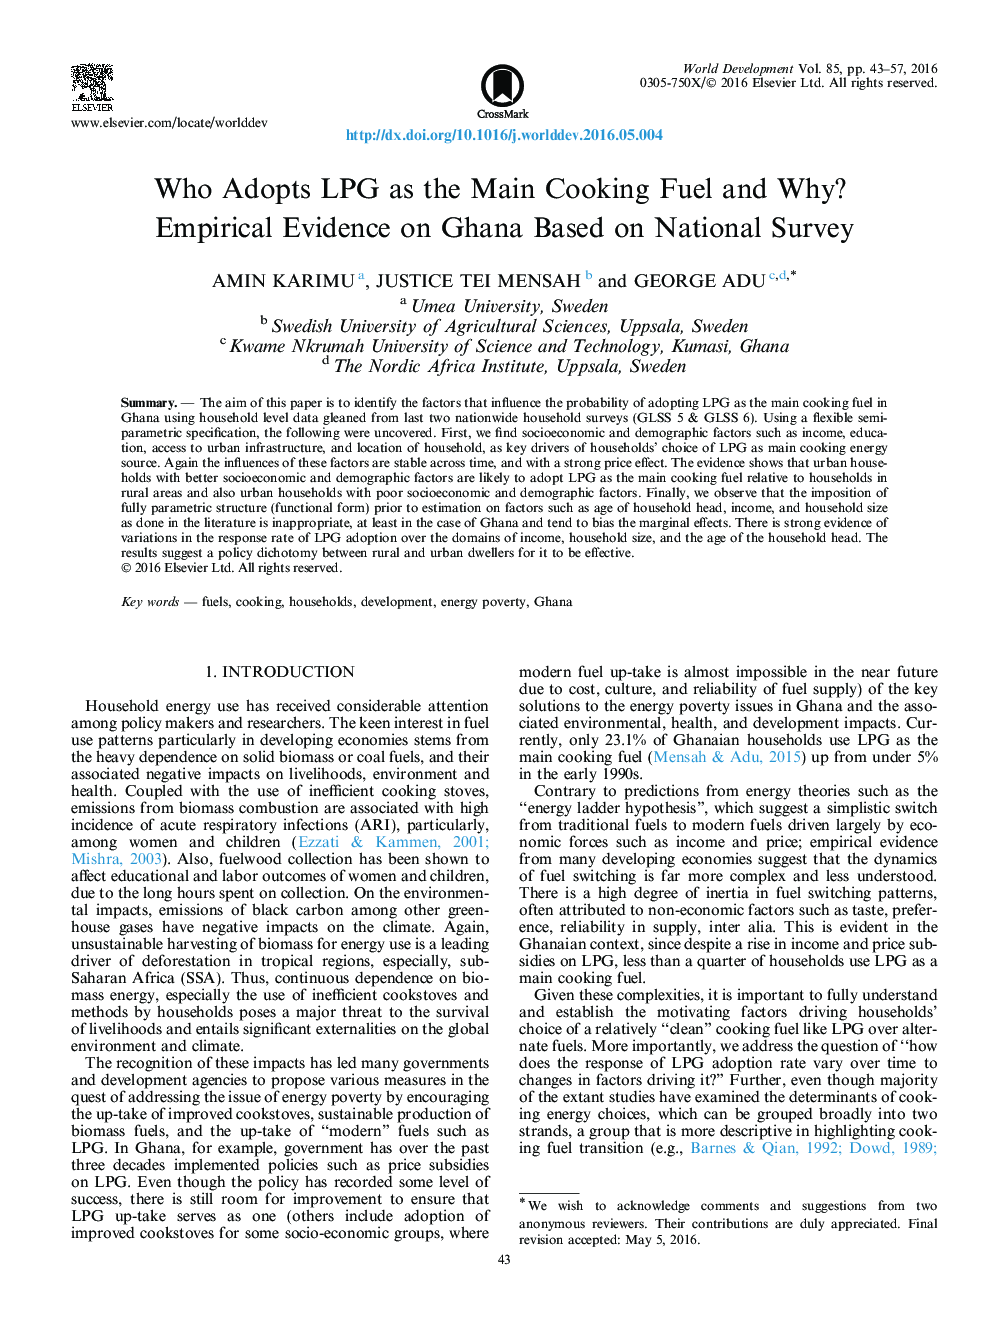 چه کسی تصویب LPG به عنوان سوخت پخت و پز اصلی را انجام داد و چرا؟ شواهد تجربی در غنا بر اساس بررسی ملی